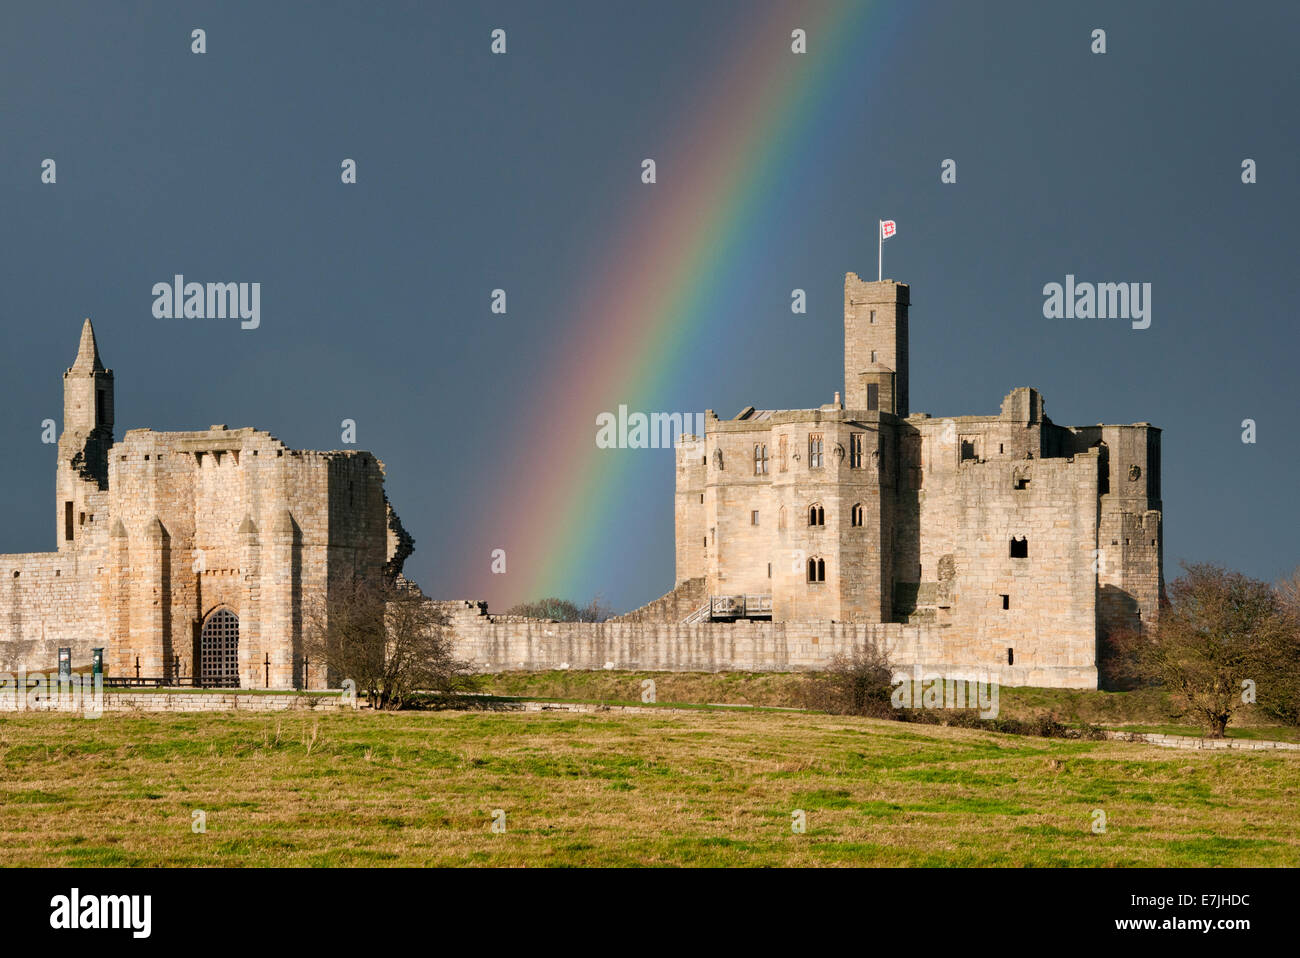 Rainbow Over Warkworth Castle, Warkworth, Northumberland, England, UK Stock Photo